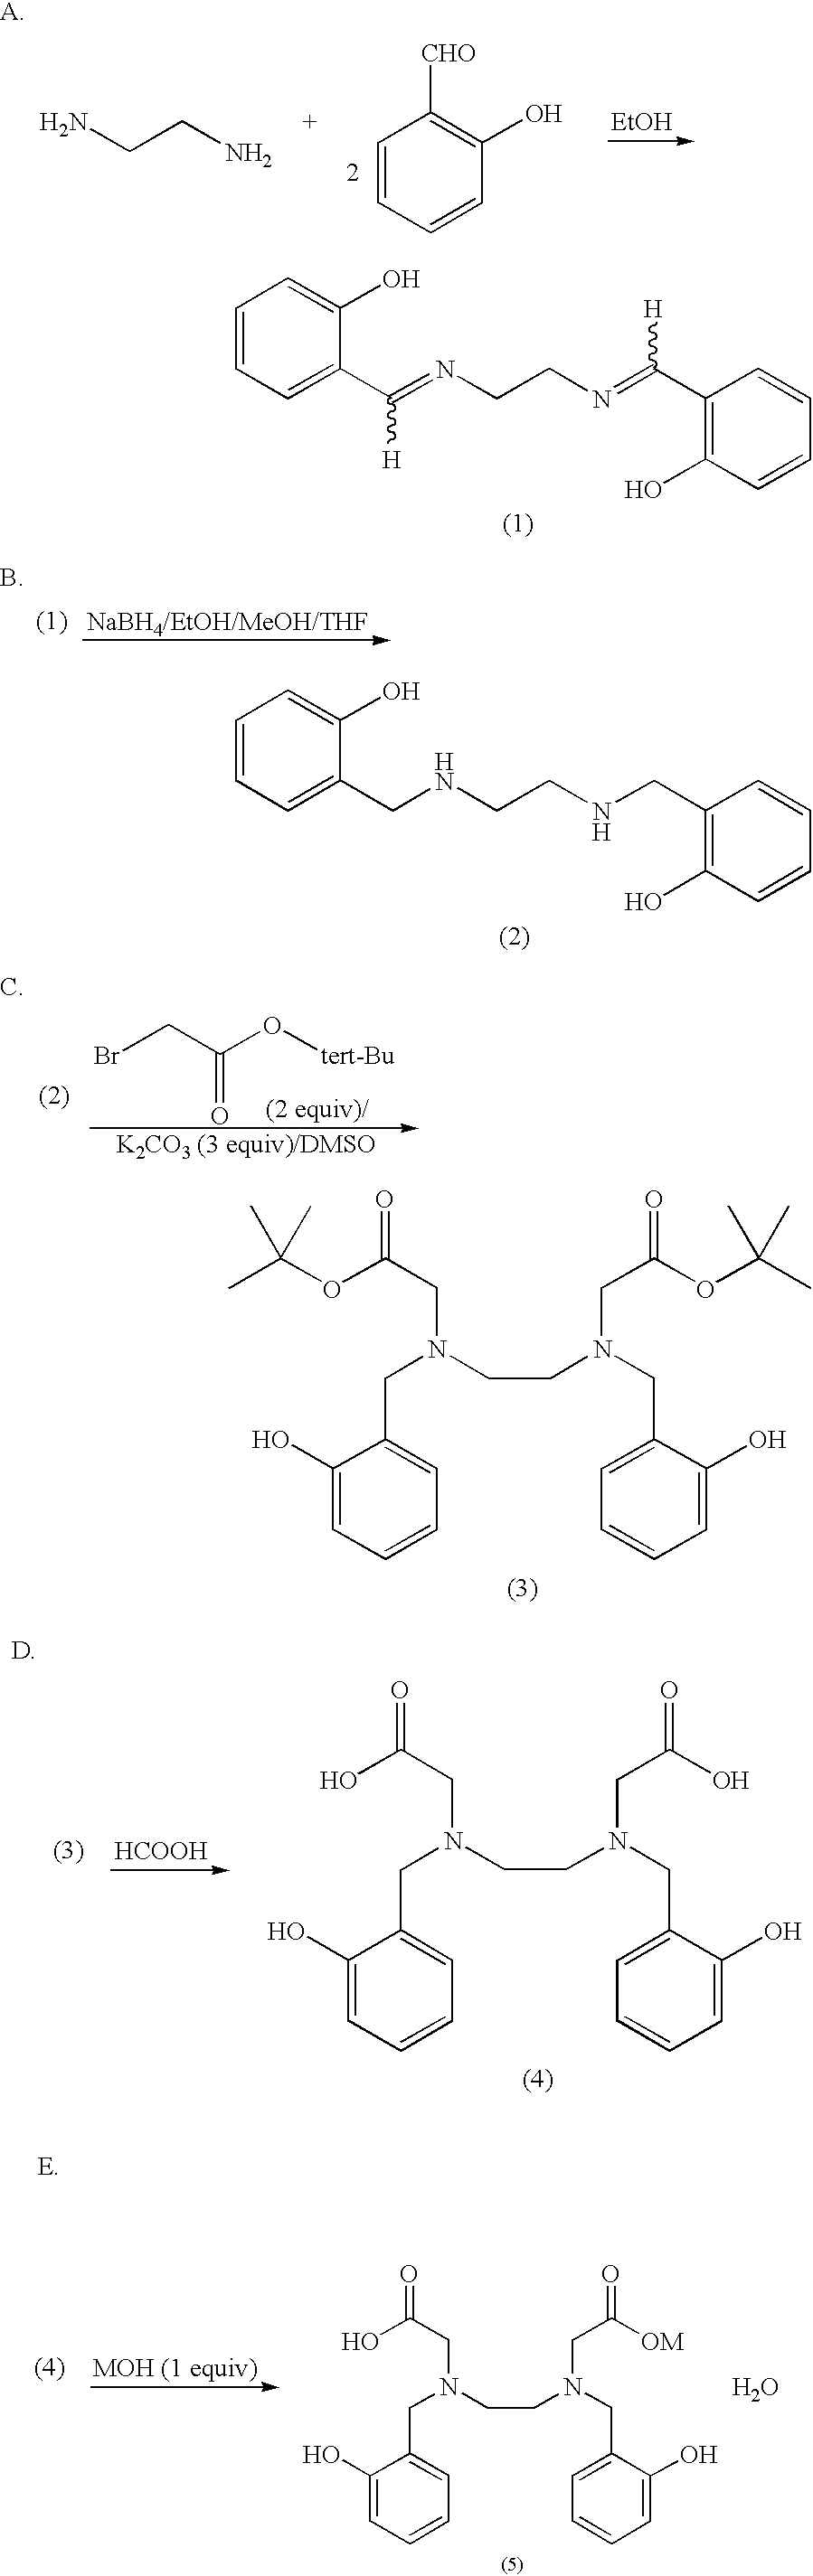 N,N'-bis(2-hydroxybenzyl)ethylenediamine-N,N'-diacetic acid in iron chelating therapy